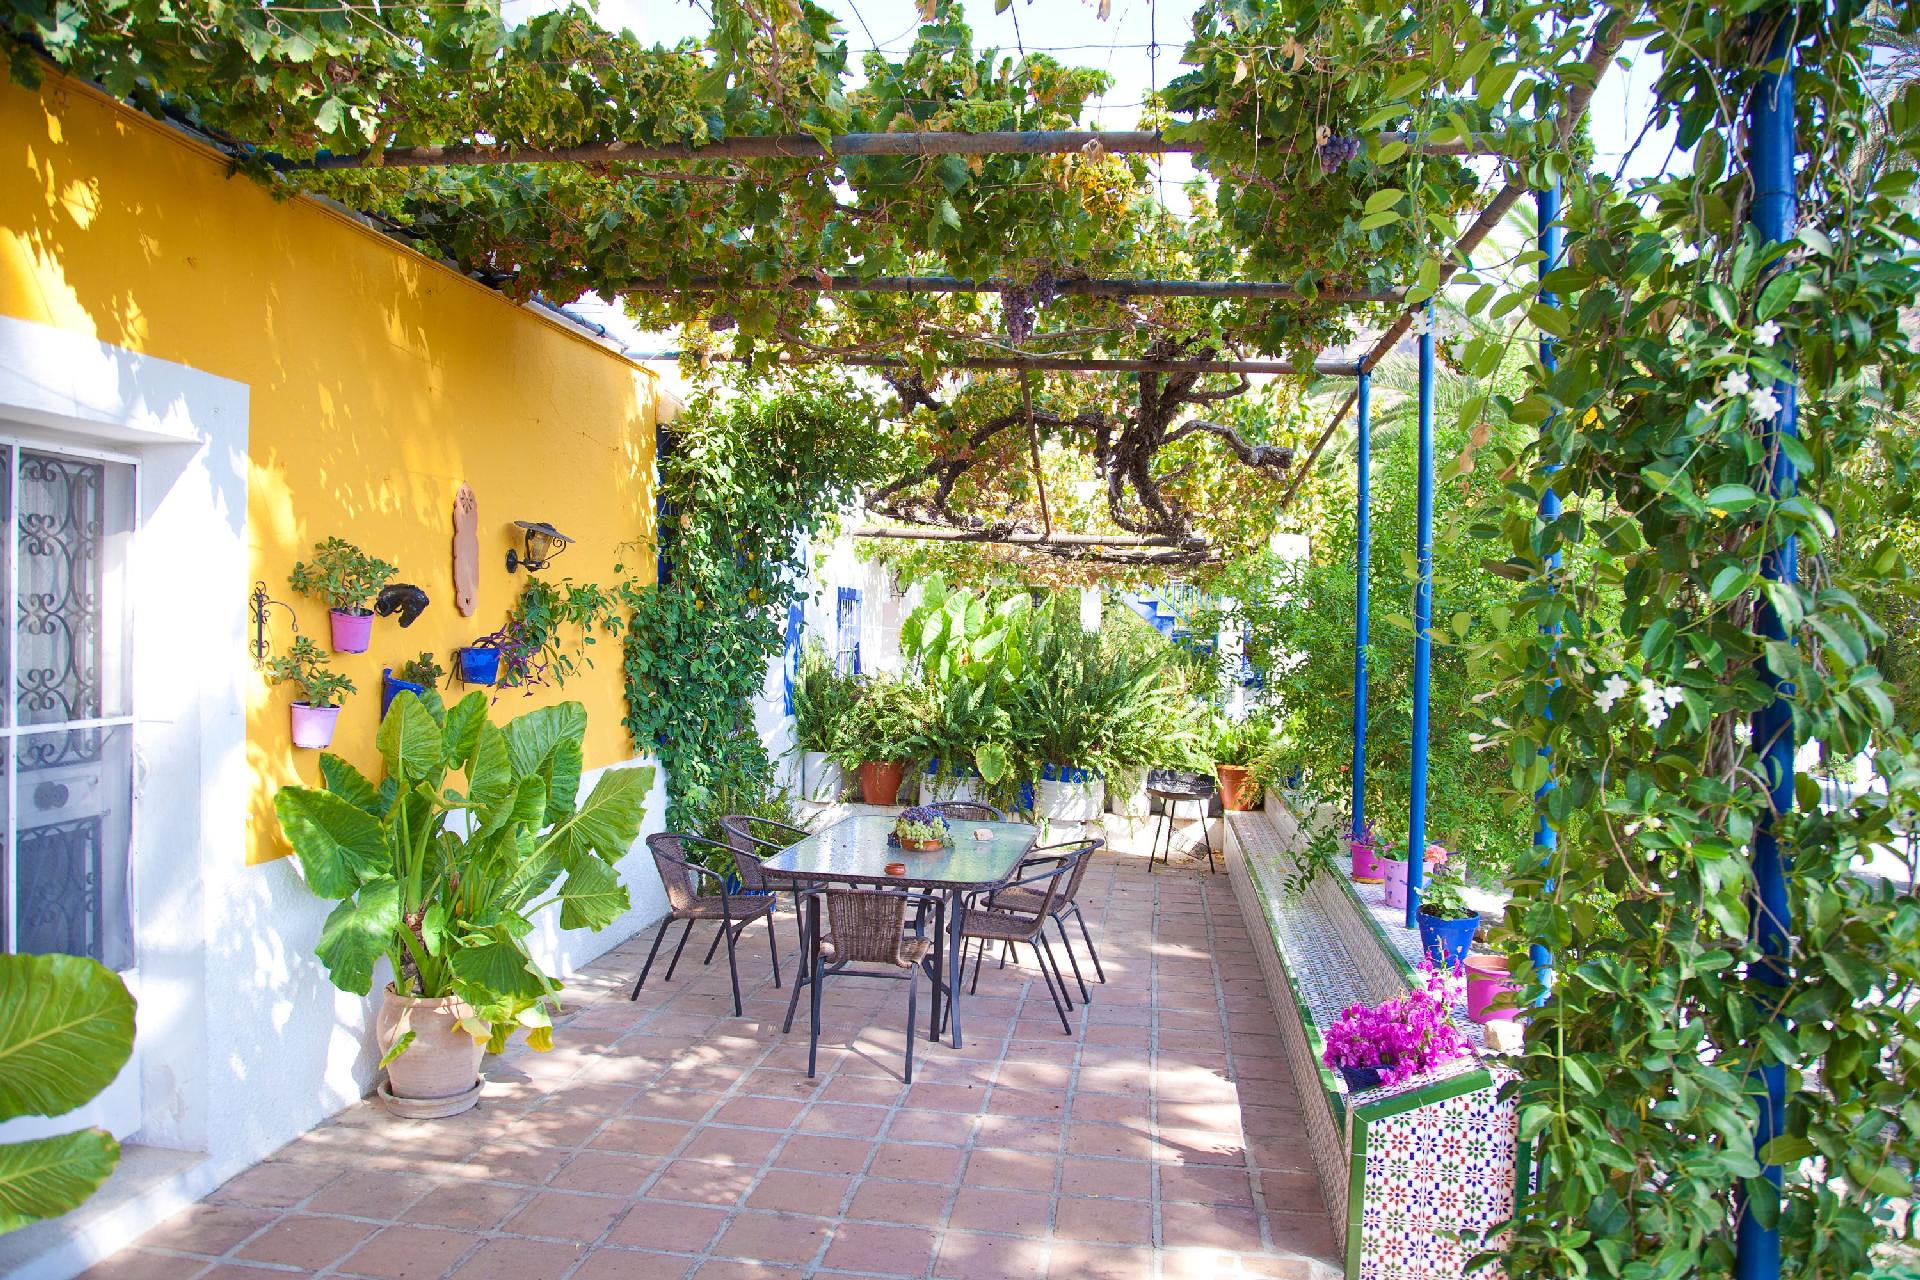 Typisch andalusisches Haus von Orangenplantagen um Ferienhaus  Malaga